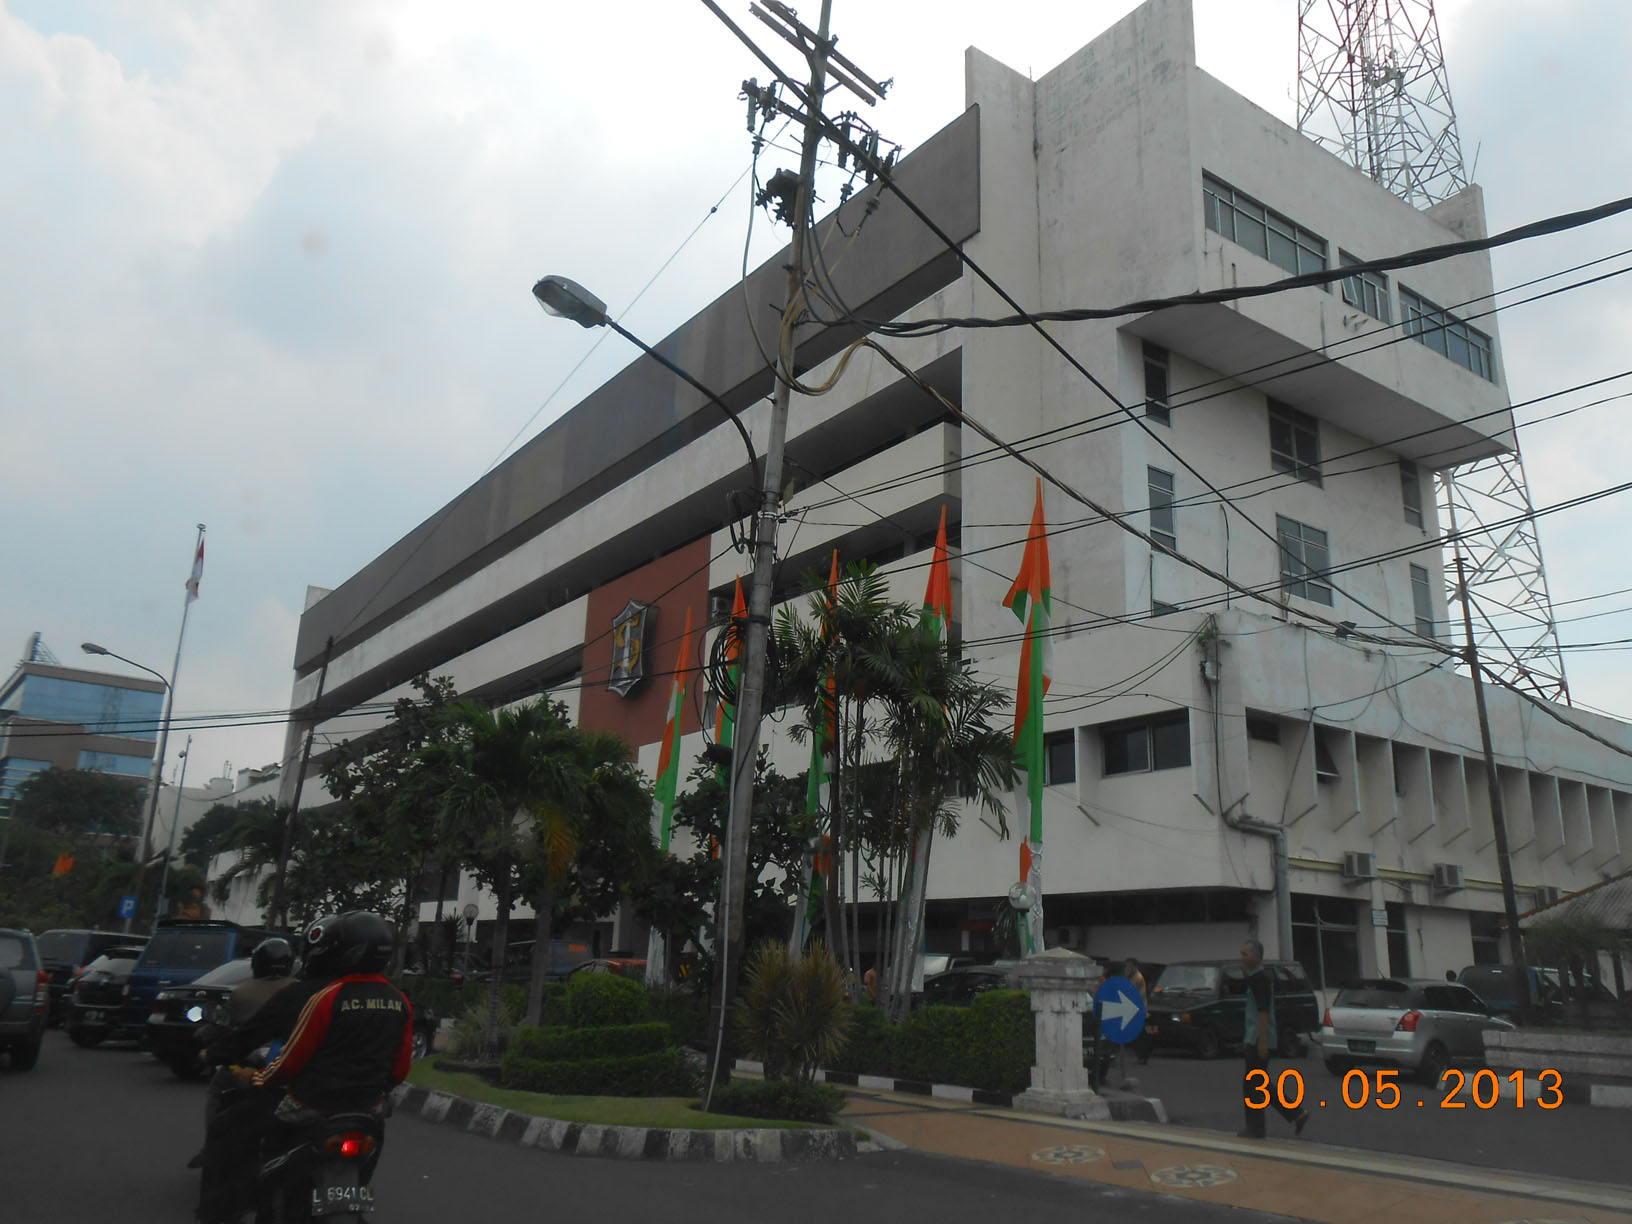 Balai Kota Surabaya Jalan Jimerto alias Graha Sawunggaling dari arah tenggara.